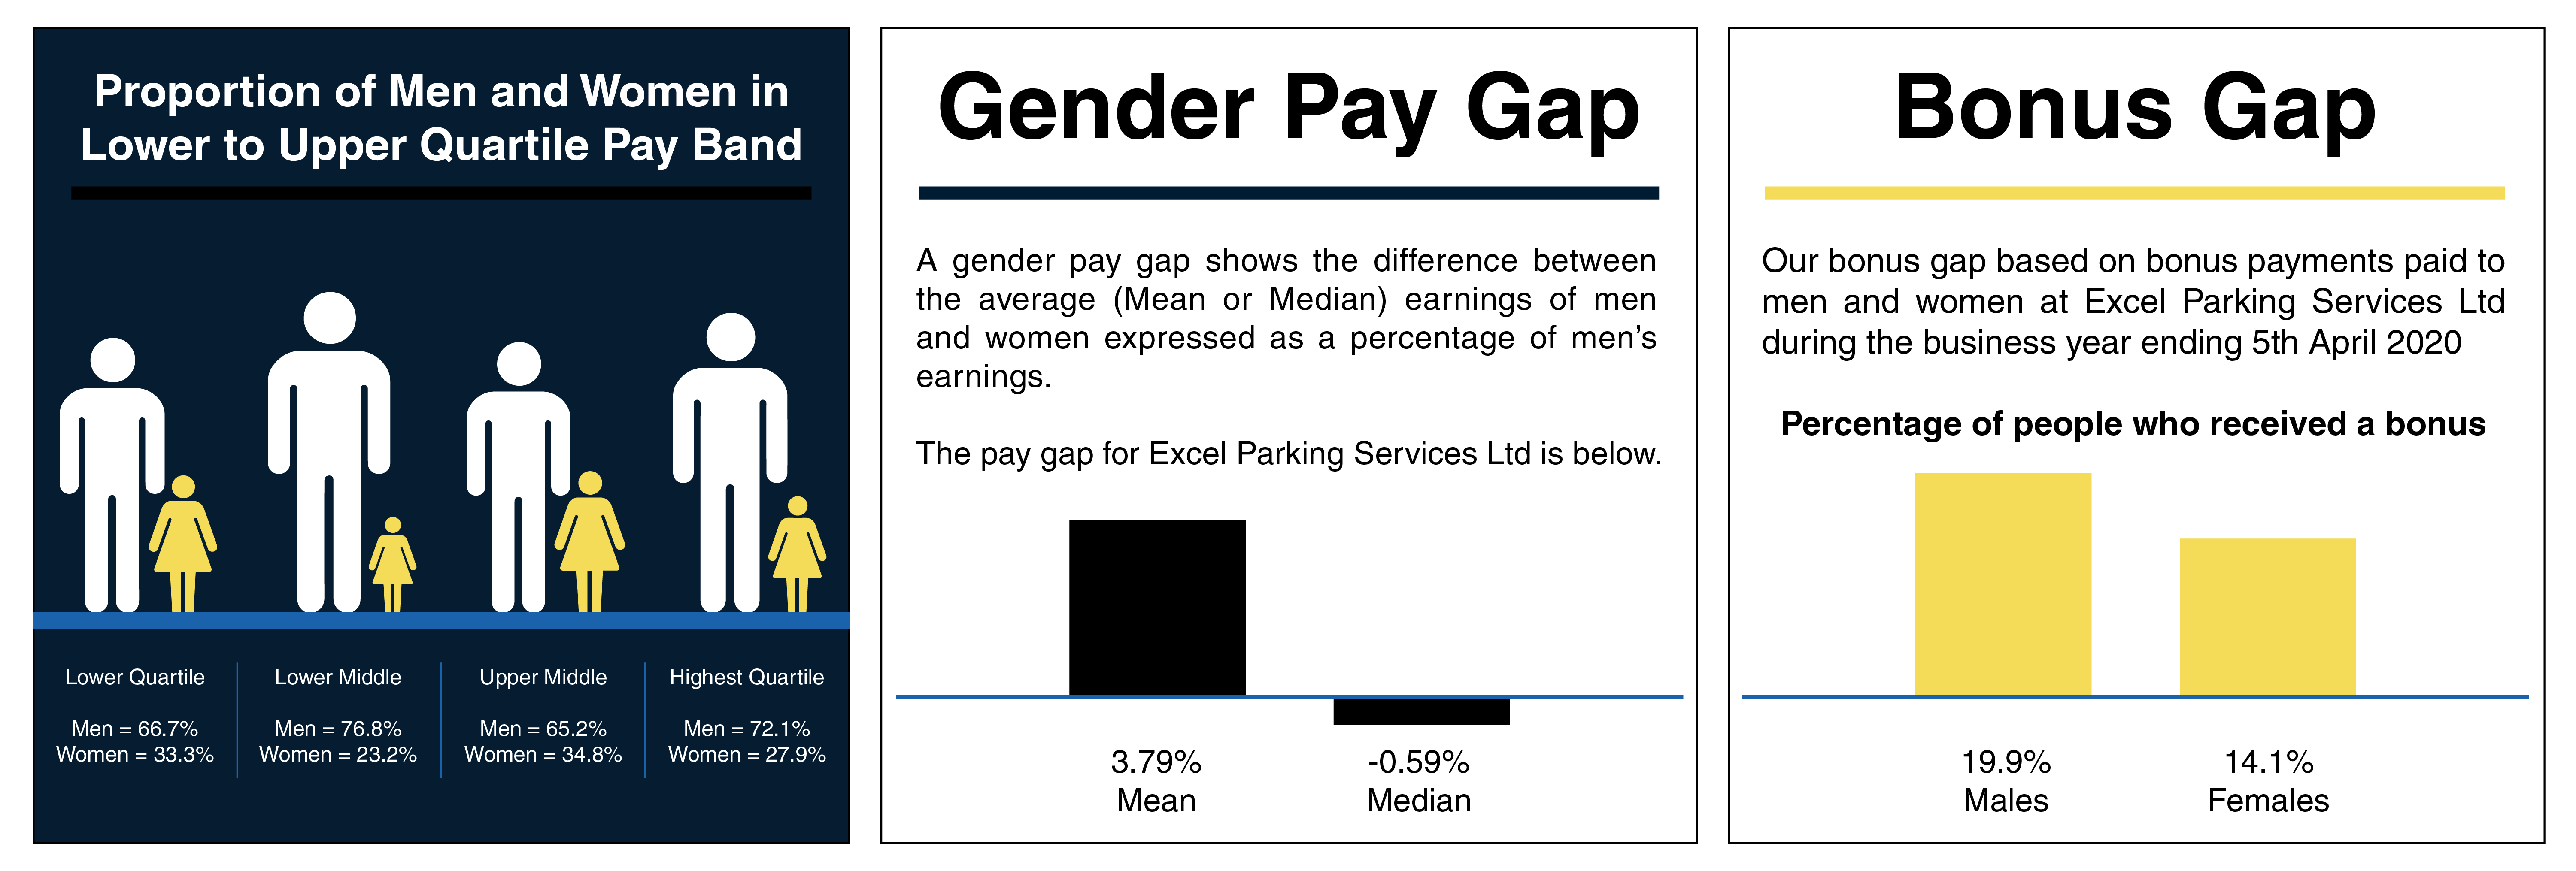 Gender Pay Gap Charts